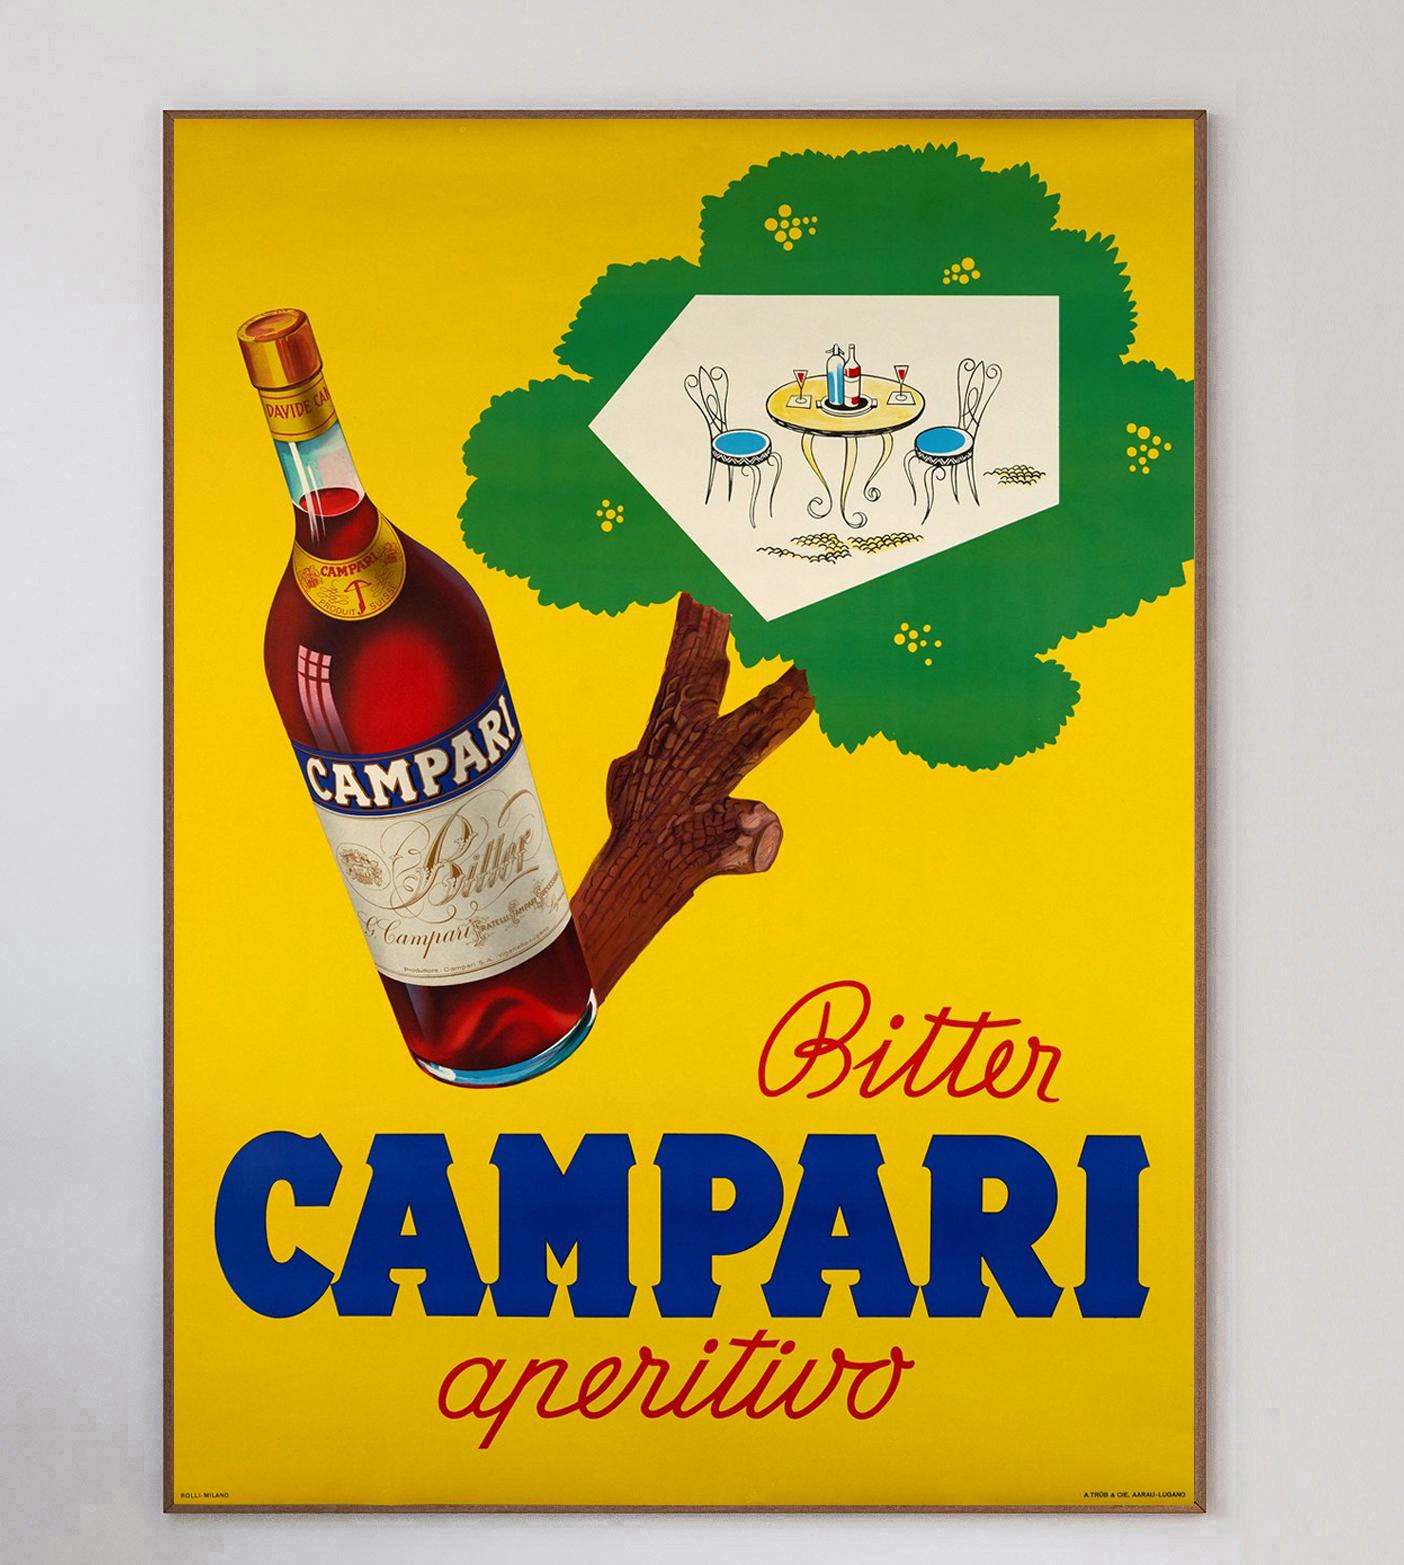 Campari a été formé en 1860 par Gaspare Campari et l'apéritif est toujours aussi populaire aujourd'hui. Son fils, Davide Campari, a transformé l'entreprise en 1926 en ce qu'elle est aujourd'hui largement connue. Cette magnifique affiche